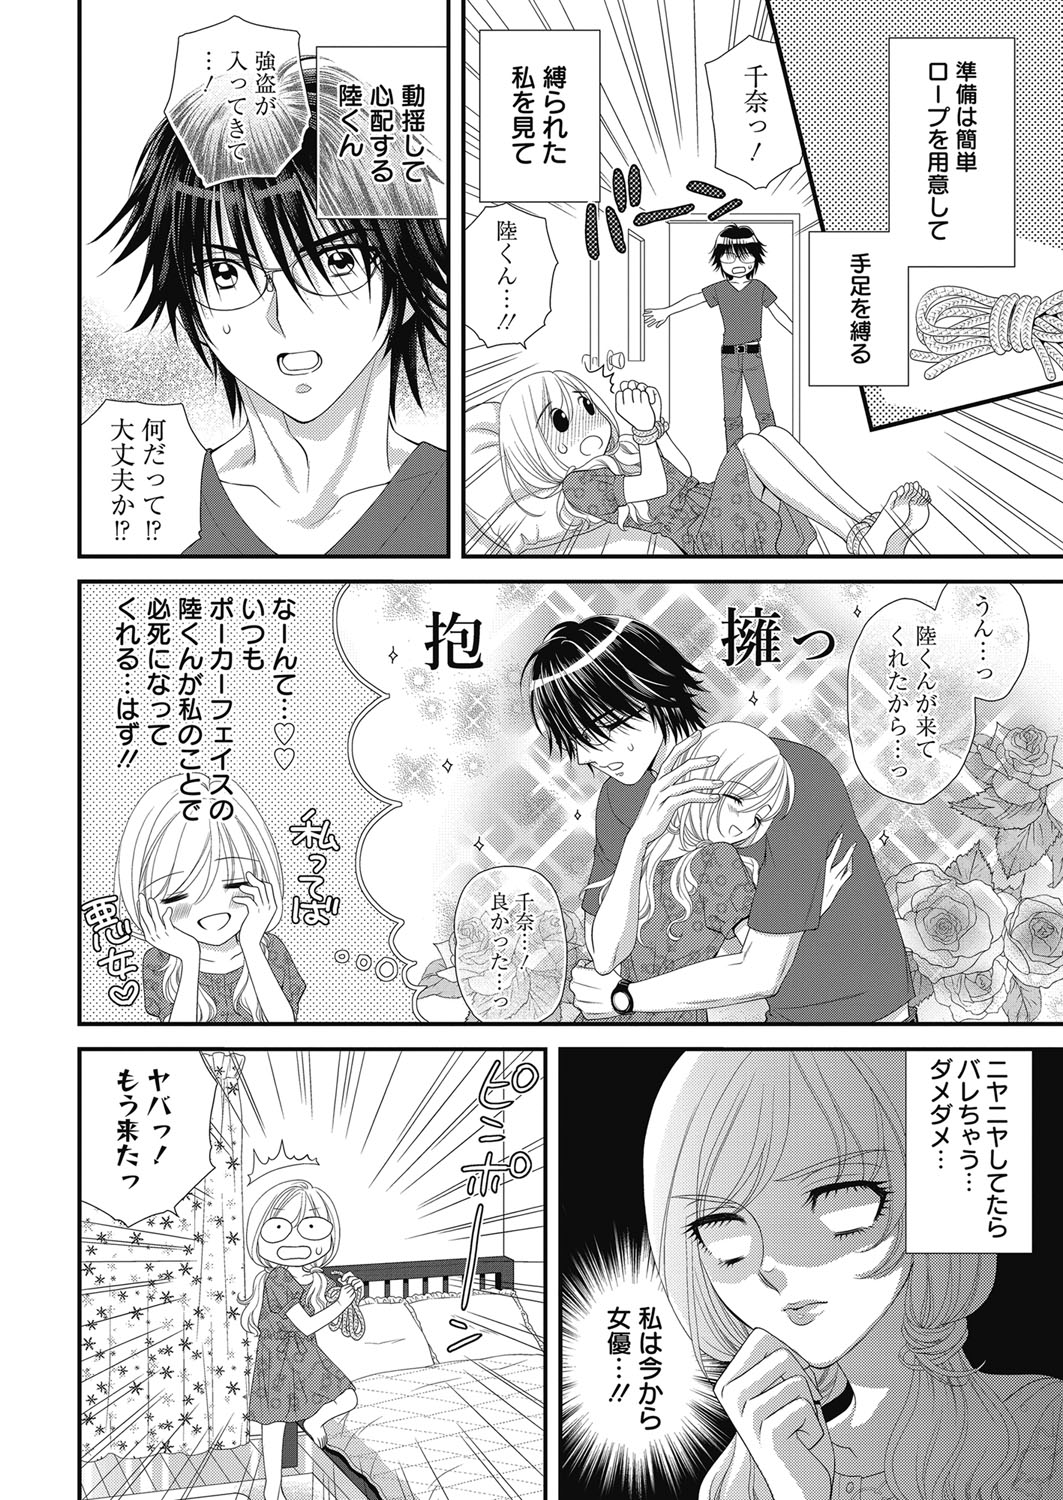 Web Manga Bangaichi Vol. 24 web 漫画ばんがいち Vol.24